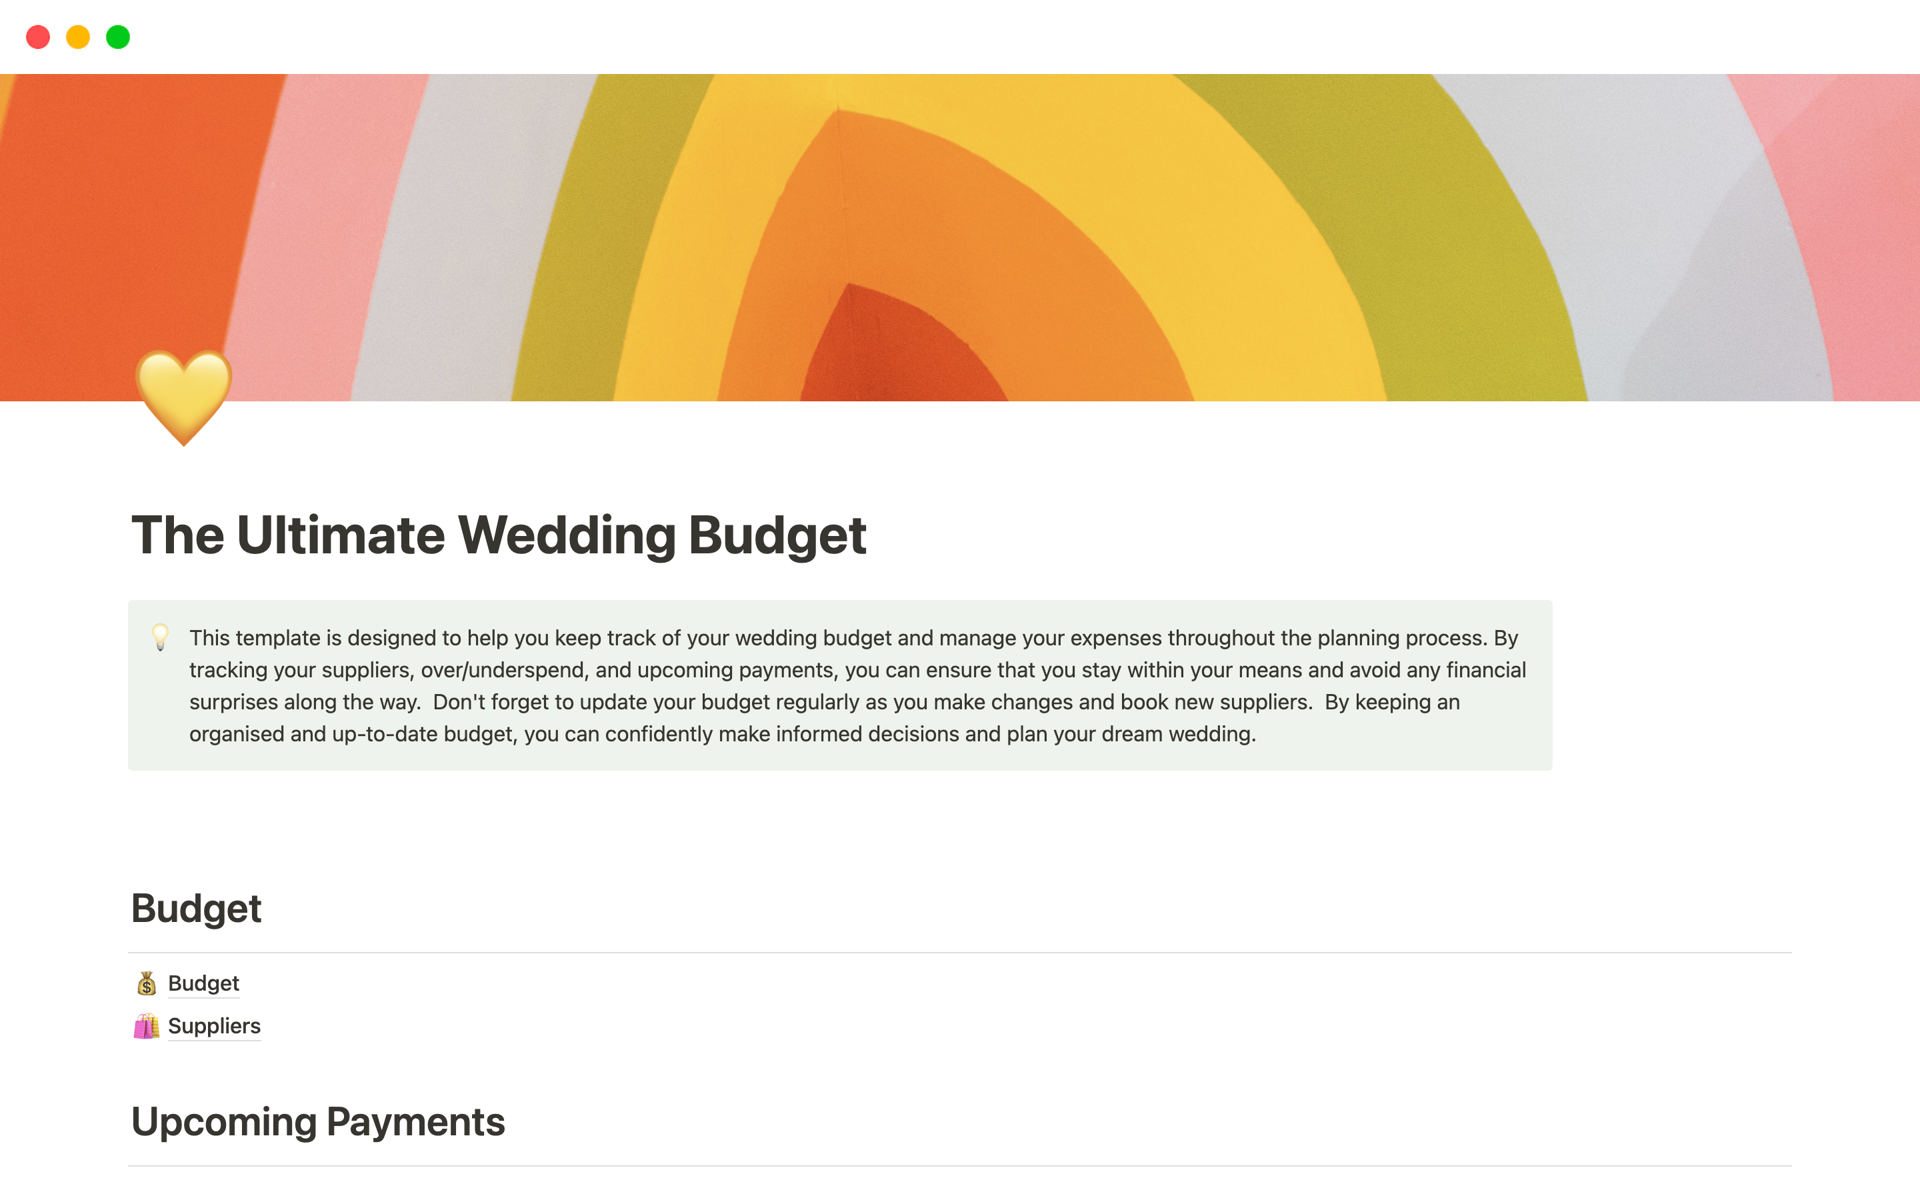 Uma prévia do modelo para The Ultimate Wedding Budget